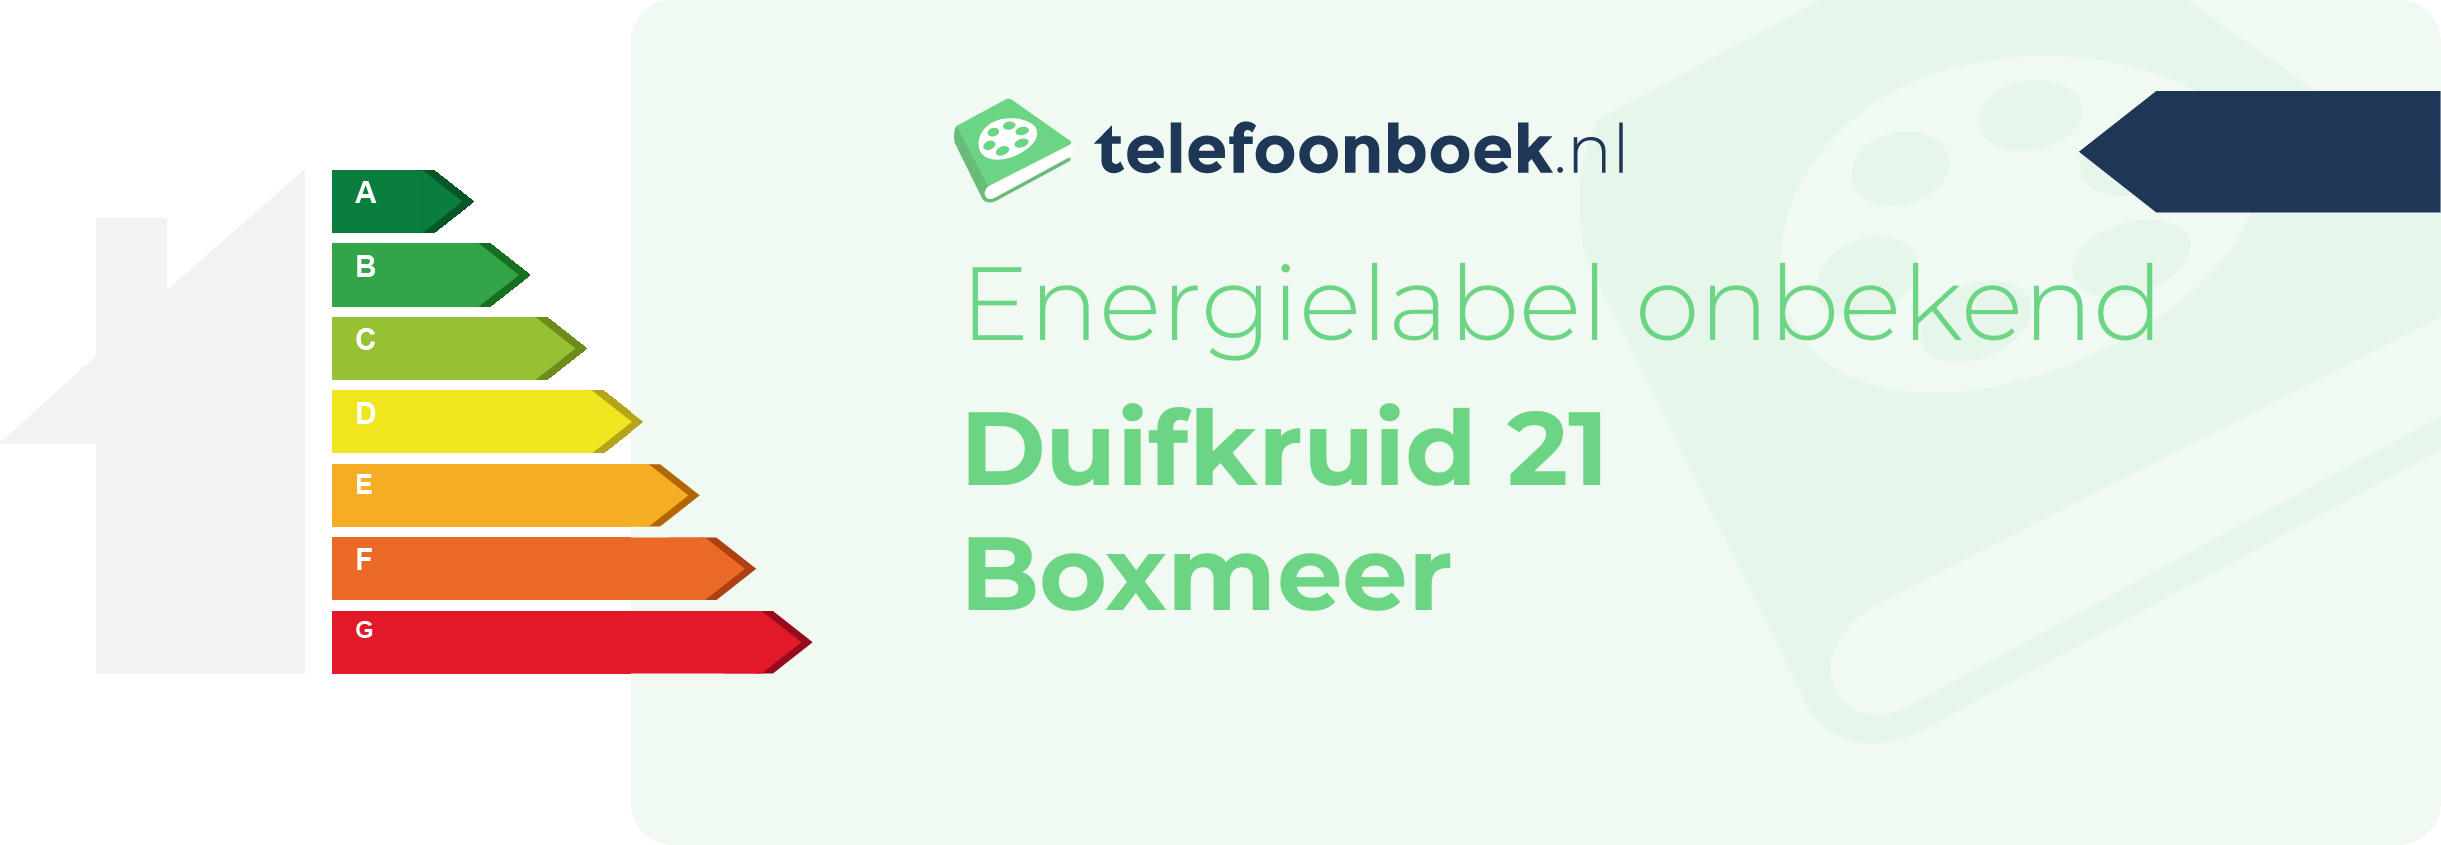 Energielabel Duifkruid 21 Boxmeer